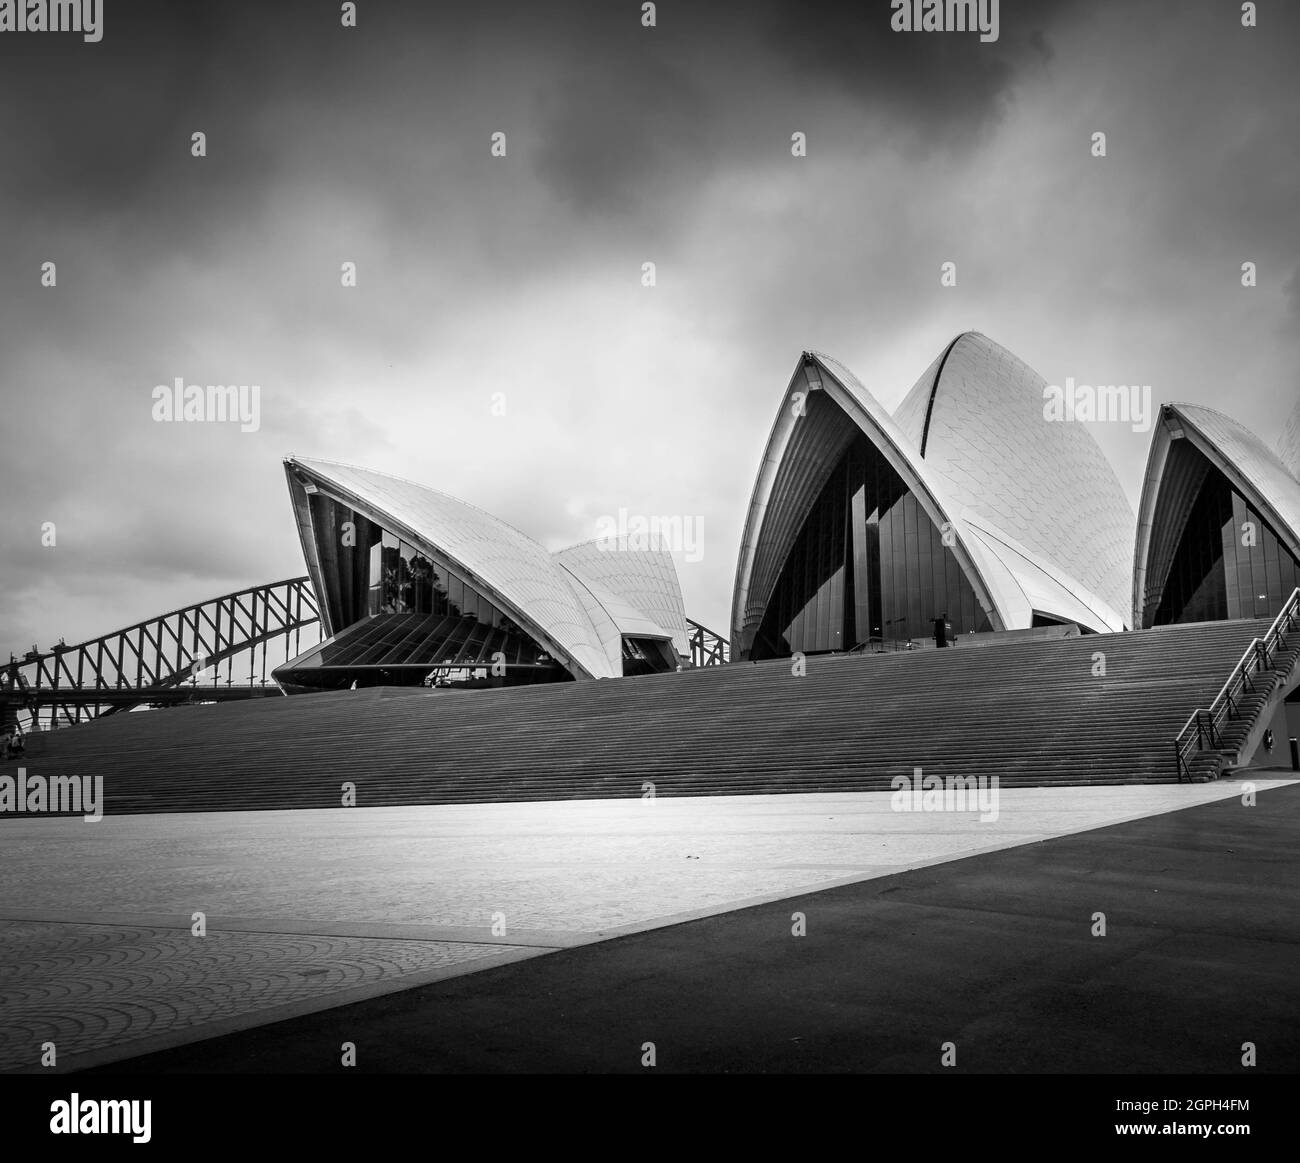 Immagine in bianco e nero del teatro lirico di Sydney e del ponte senza gente. Foto Stock